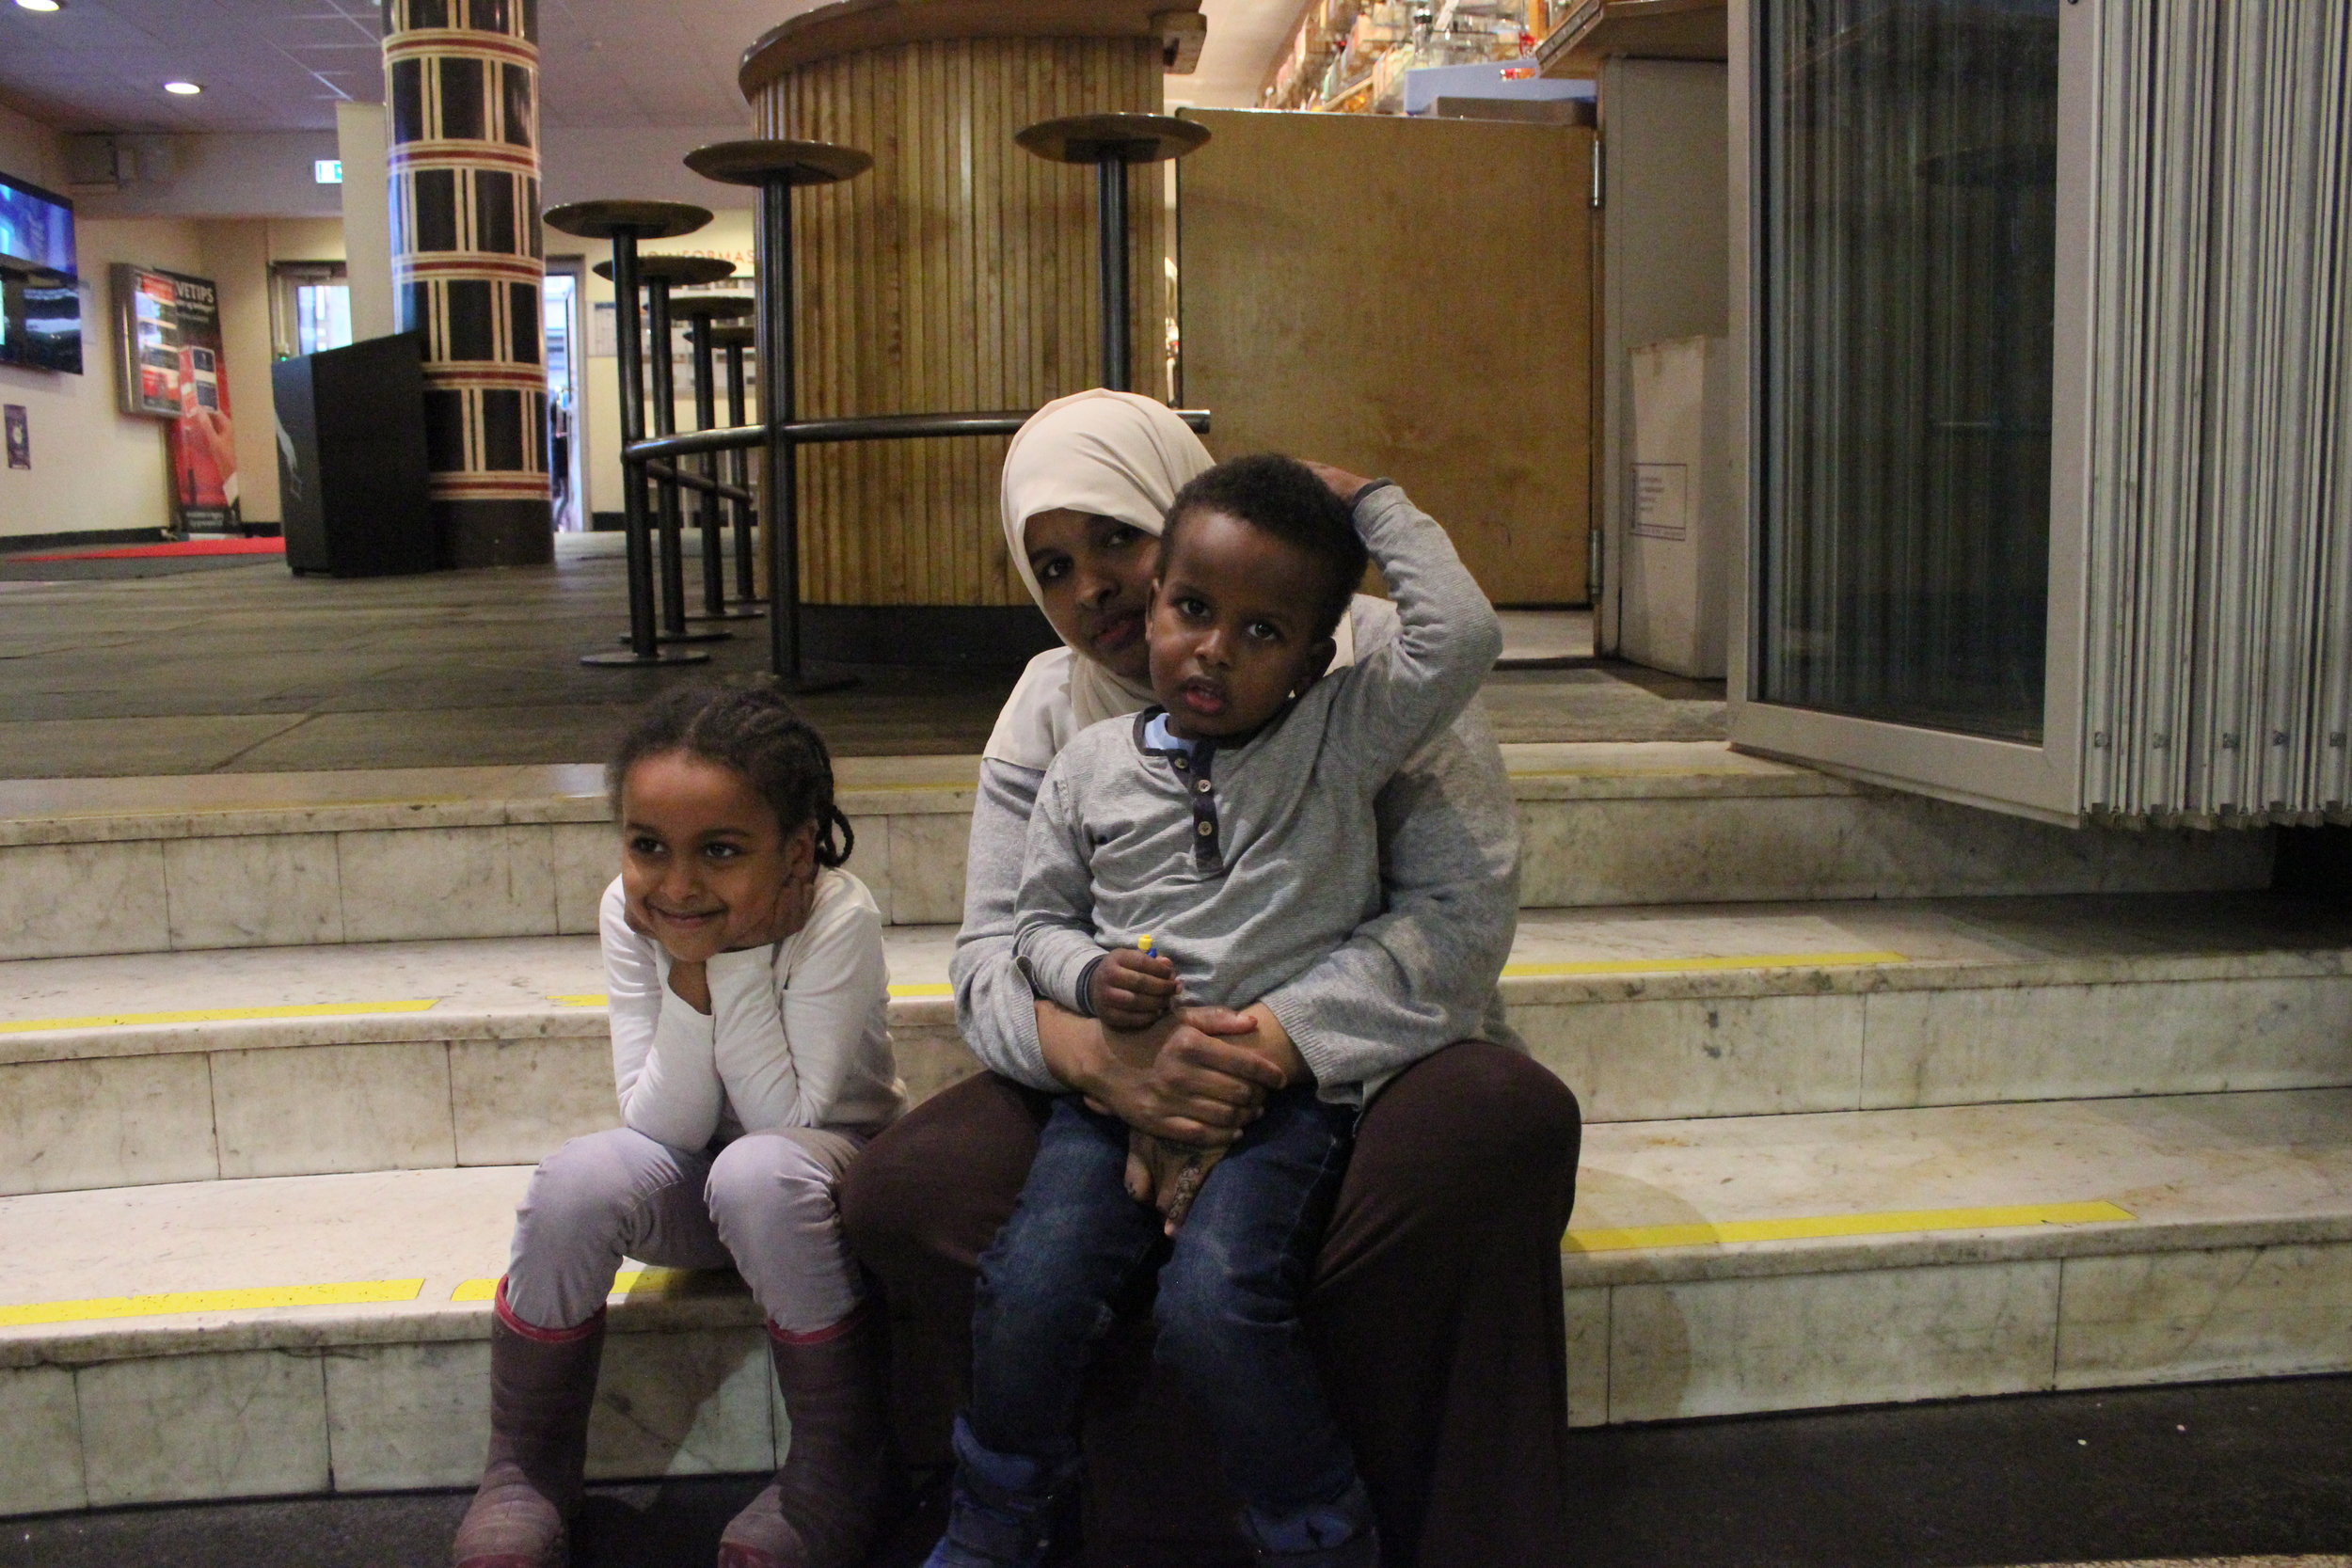 -Det å kunne komme hit med barna og se filmer gratis betyr mye, sier norsk-somaliske Mona. Sammen med barna Fatima (5) og Foad (3) gleder de seg til å se filmen Hotel Transylvania.